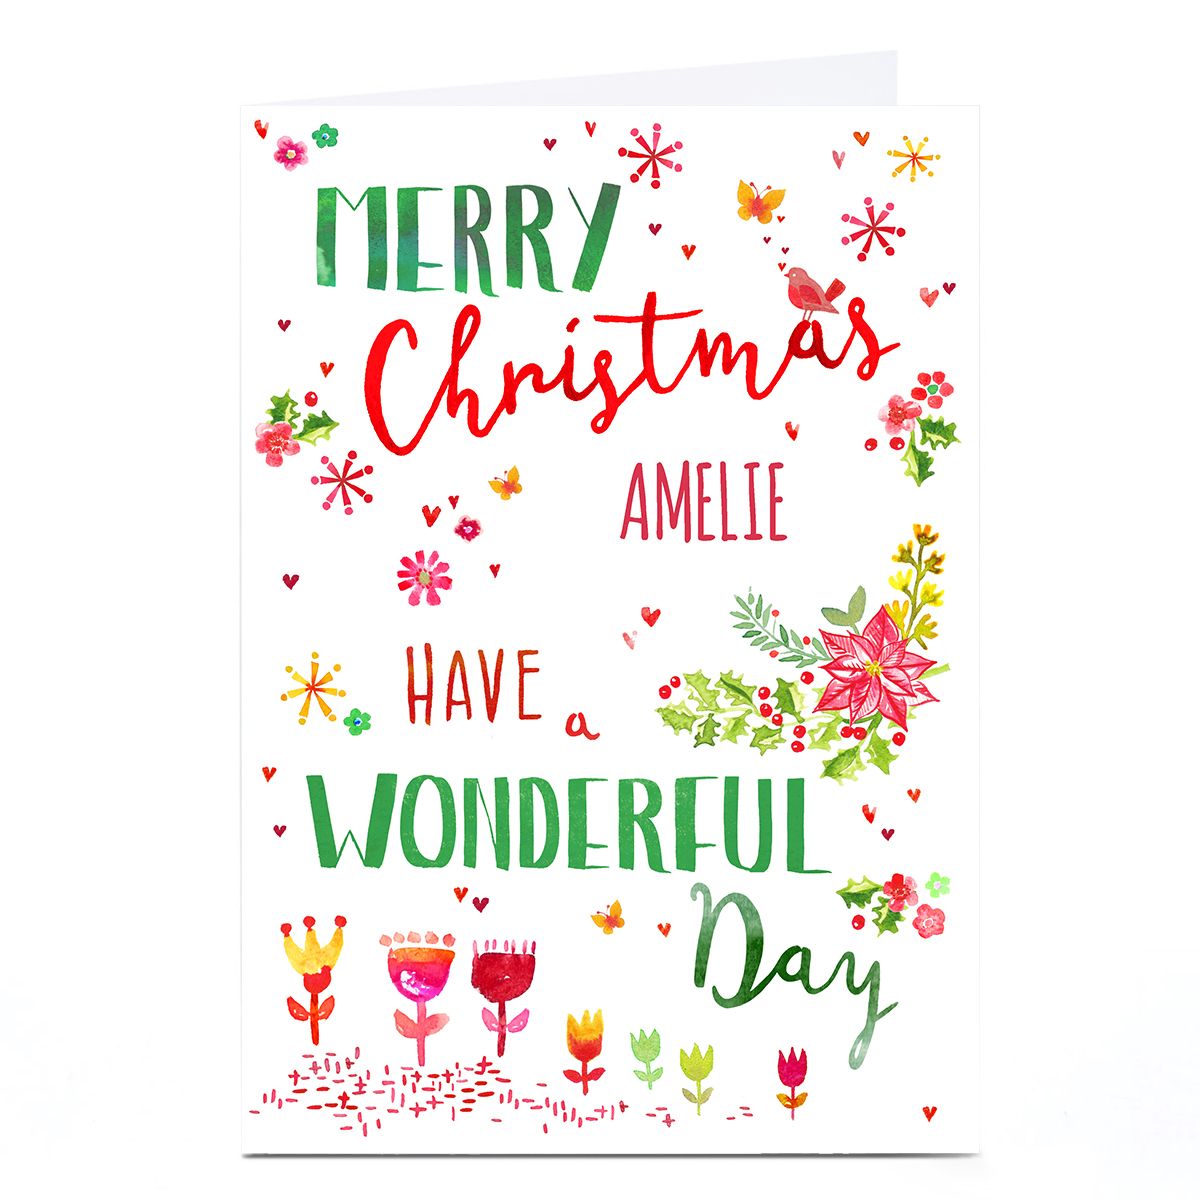 Personalised Nik Golesworthy Christmas Card - Wonderful Day